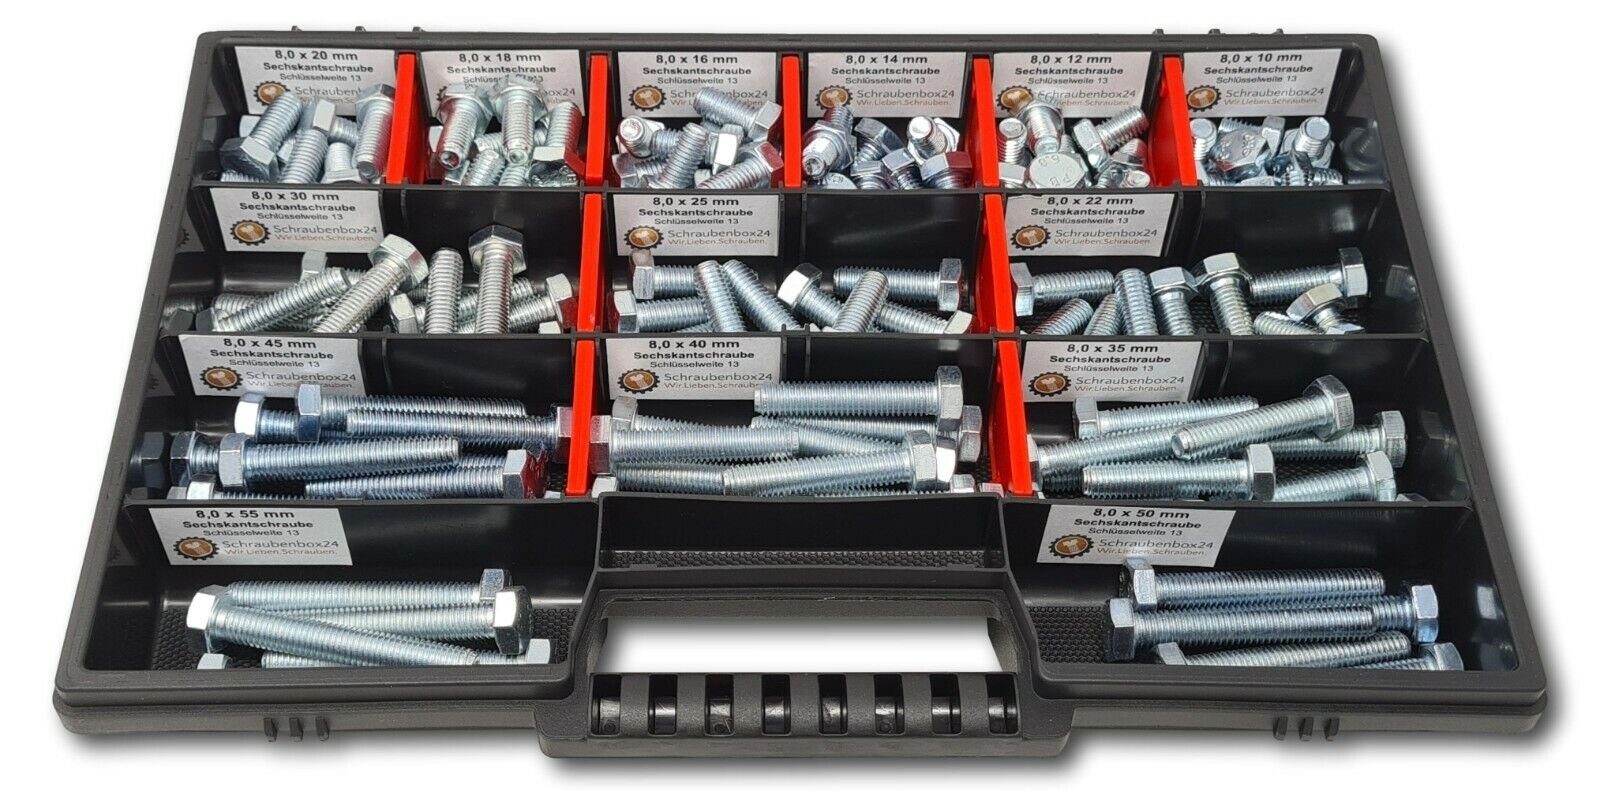 Schraubenbox24 Sechskantschraube Sortiment M8 // 10mm-55mm, (M-Box, 130 St., DIN 933,ISO 4017), 130 Stück Sechskantschrauben